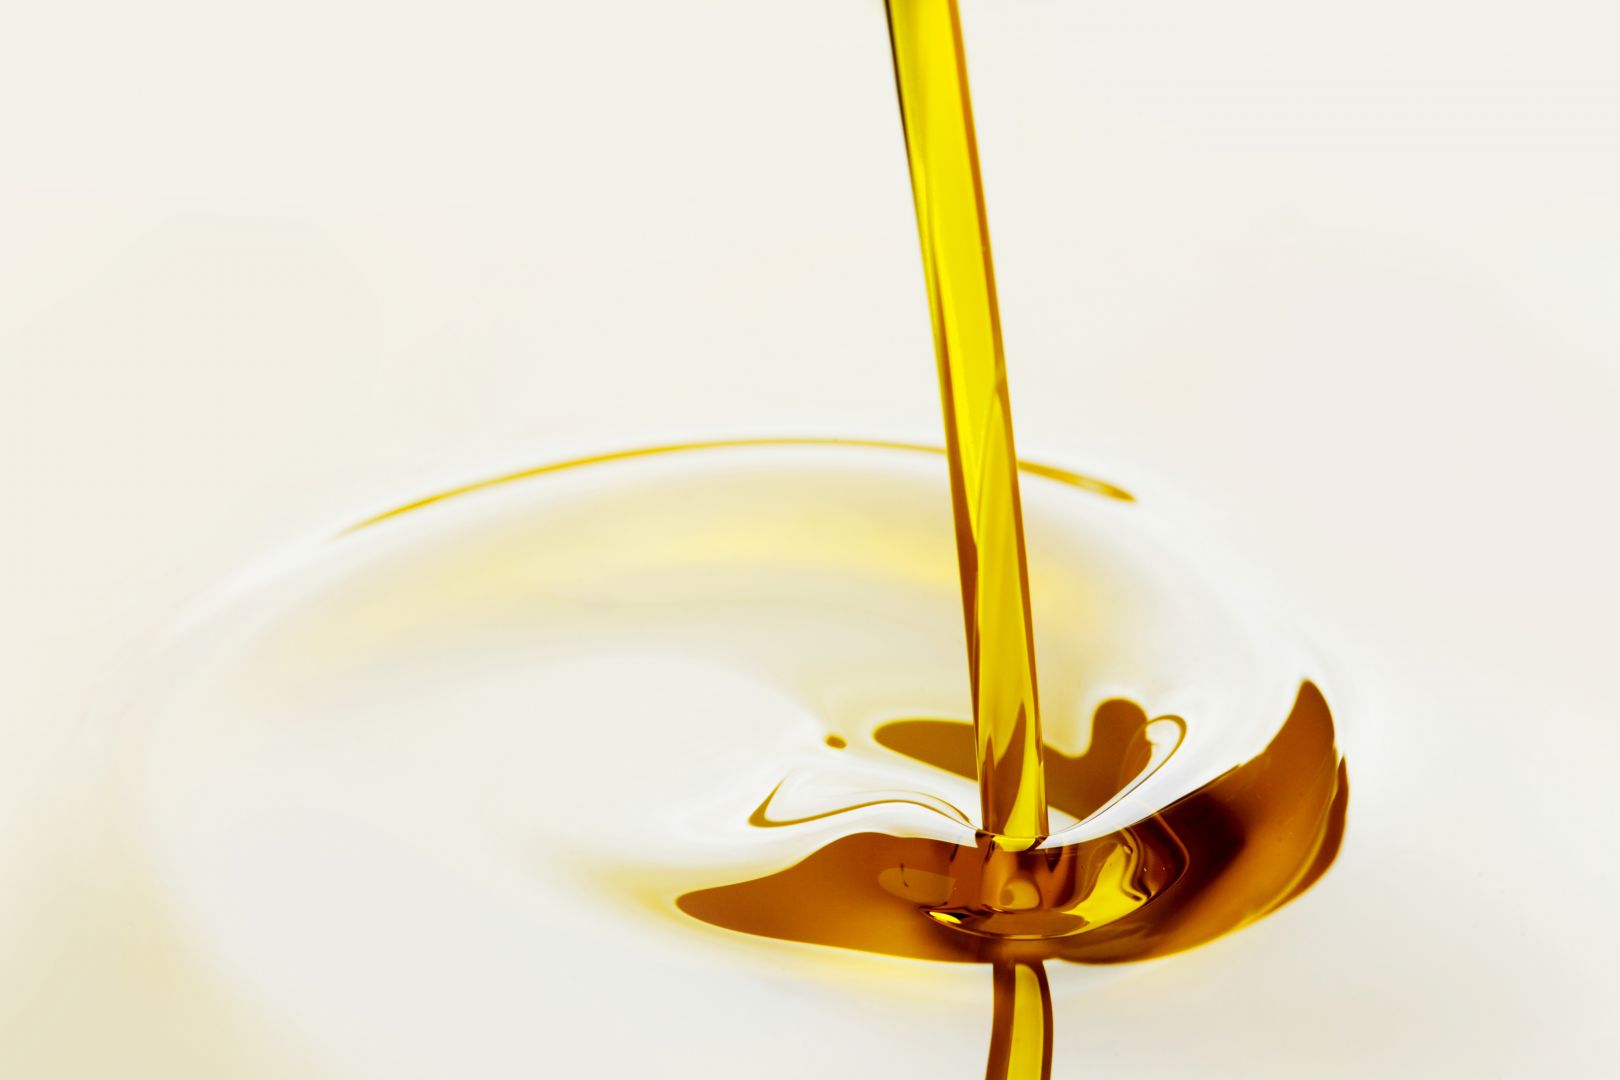 Poptávka na dodání extra lehkého topného oleje (Oleje, maziva a filtry) - Liberec